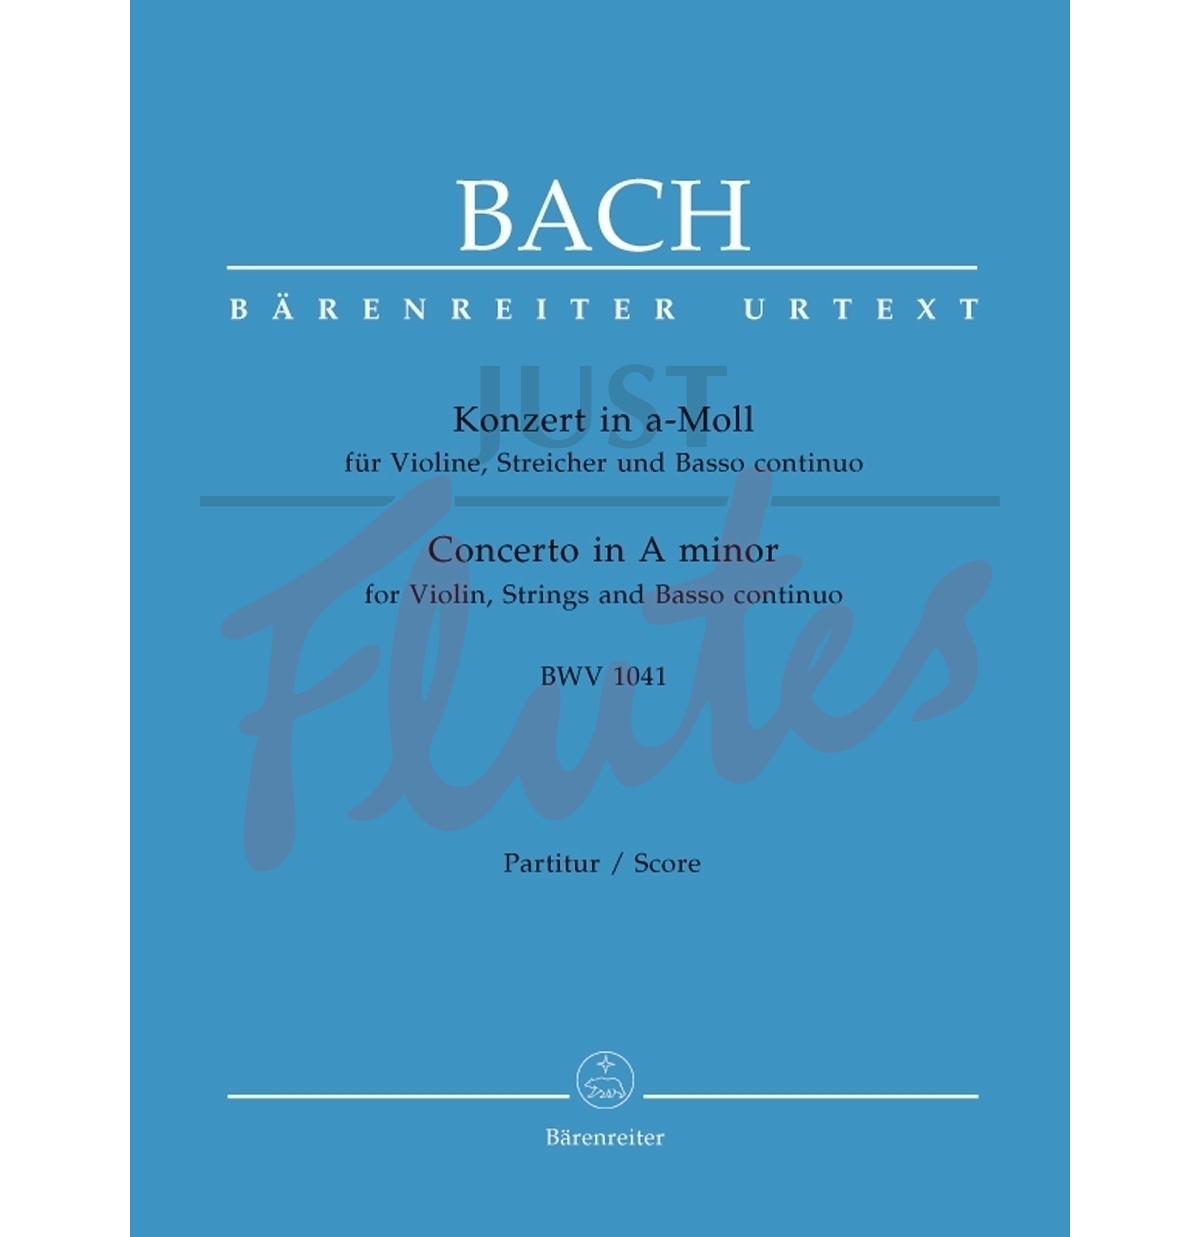 Concerto in A minor for Violin and Piano